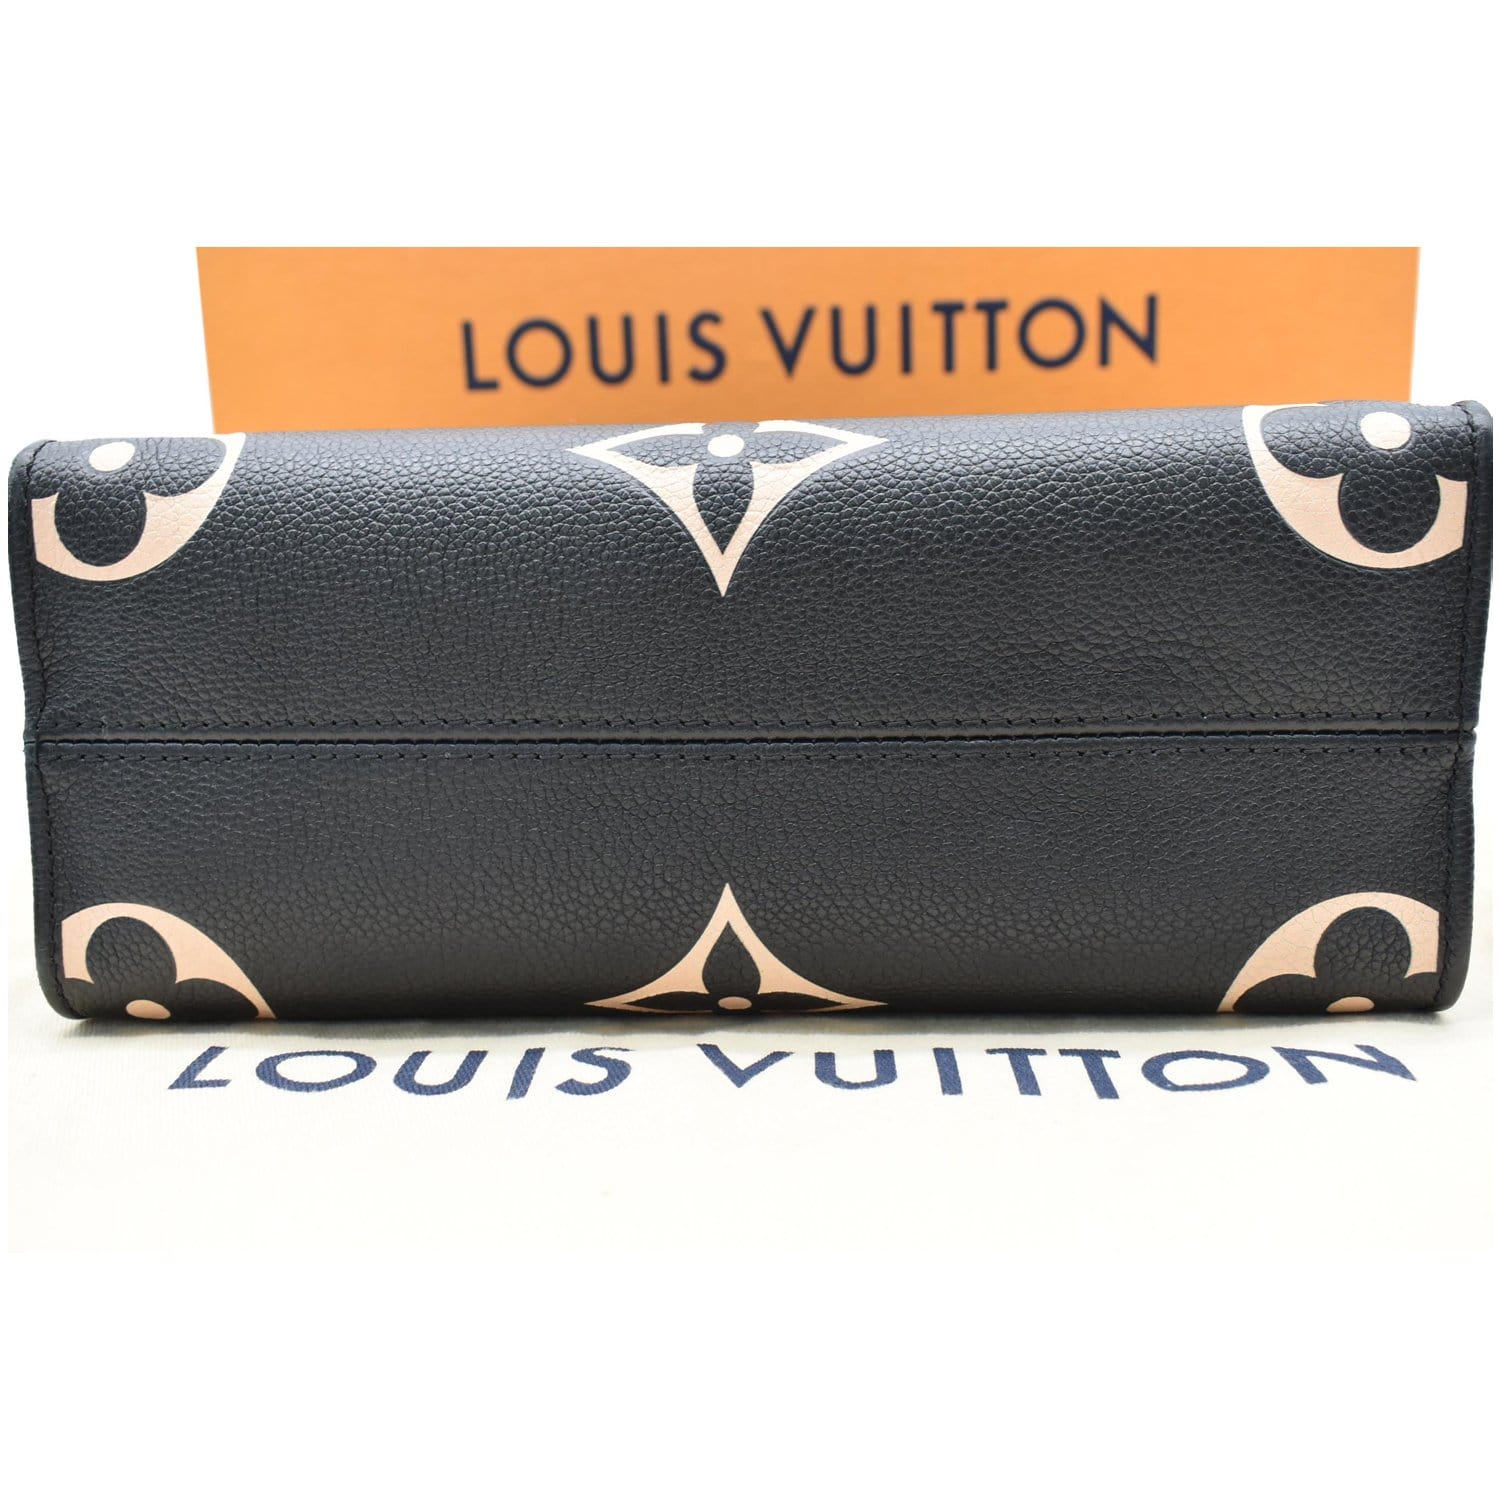 LOUIS VUITTON Onthego PM Bicolor Monogram Empreinte Shoulder Bag Black